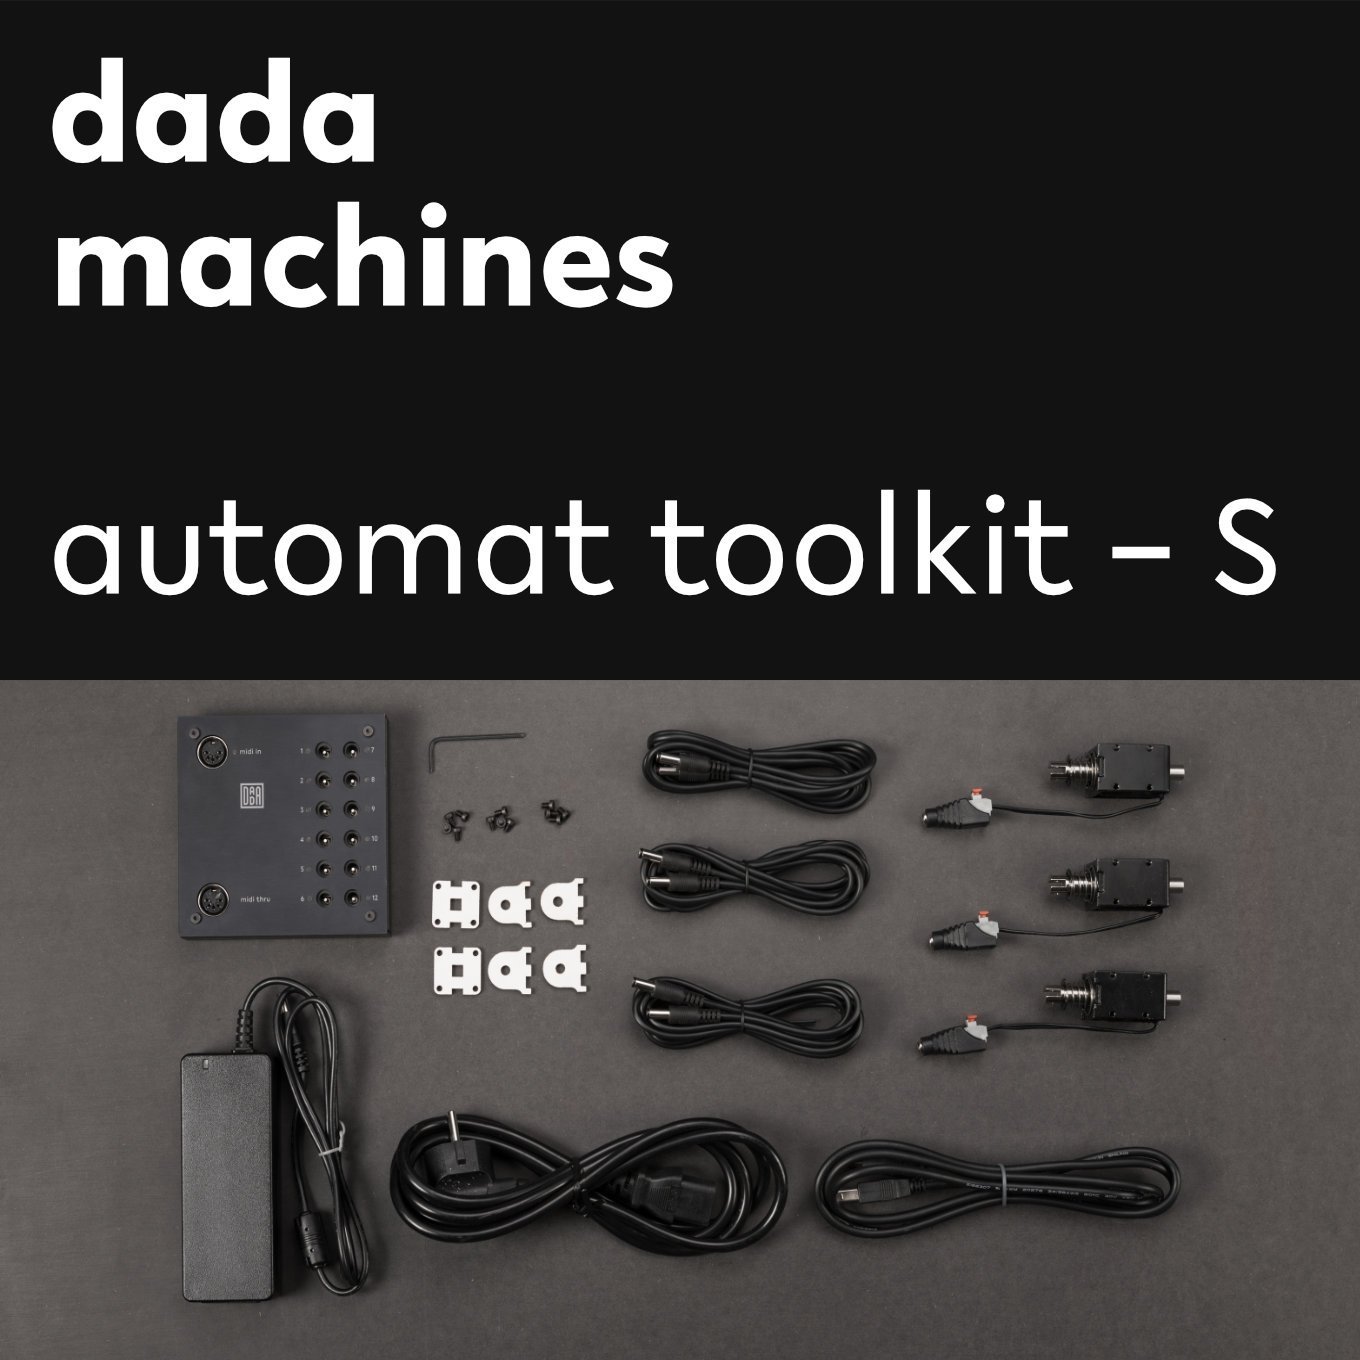 automat toolkit – S